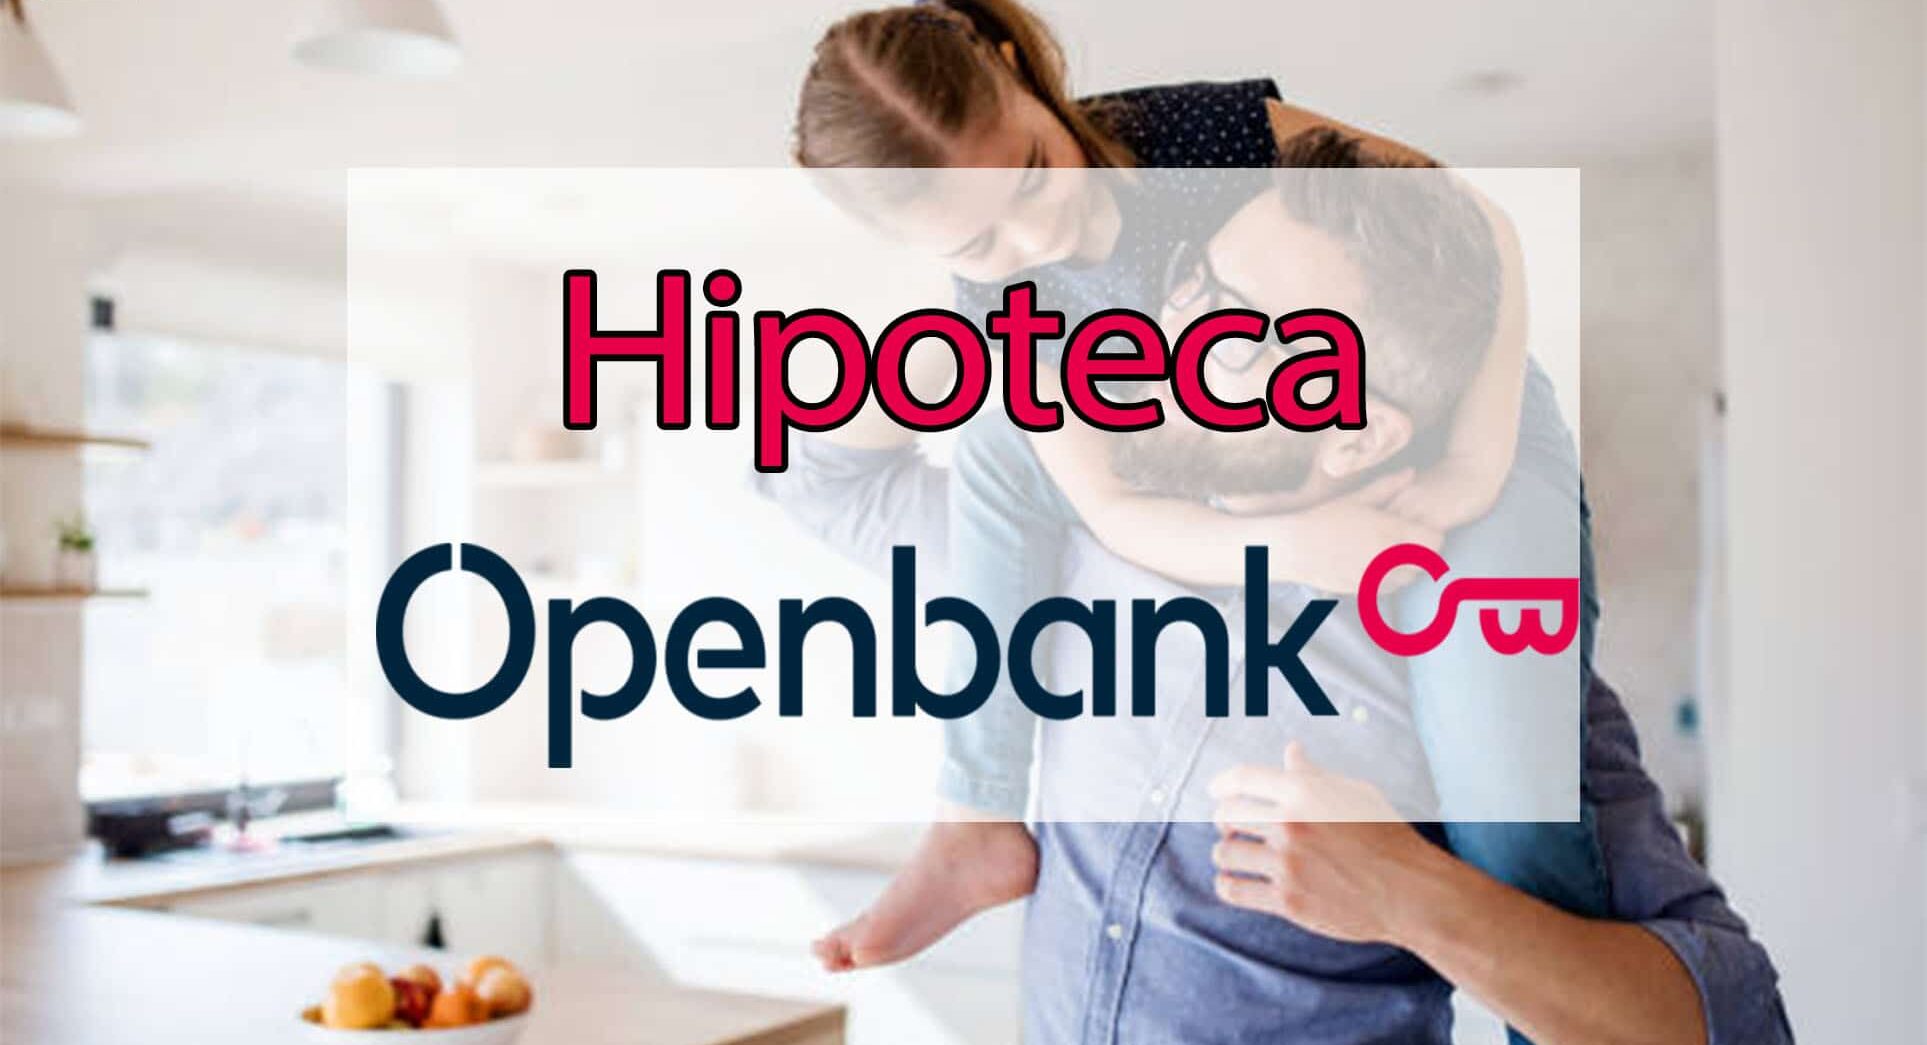 Openbank te da hasta 1.500€ por un amigo que contrate una hipoteca 4